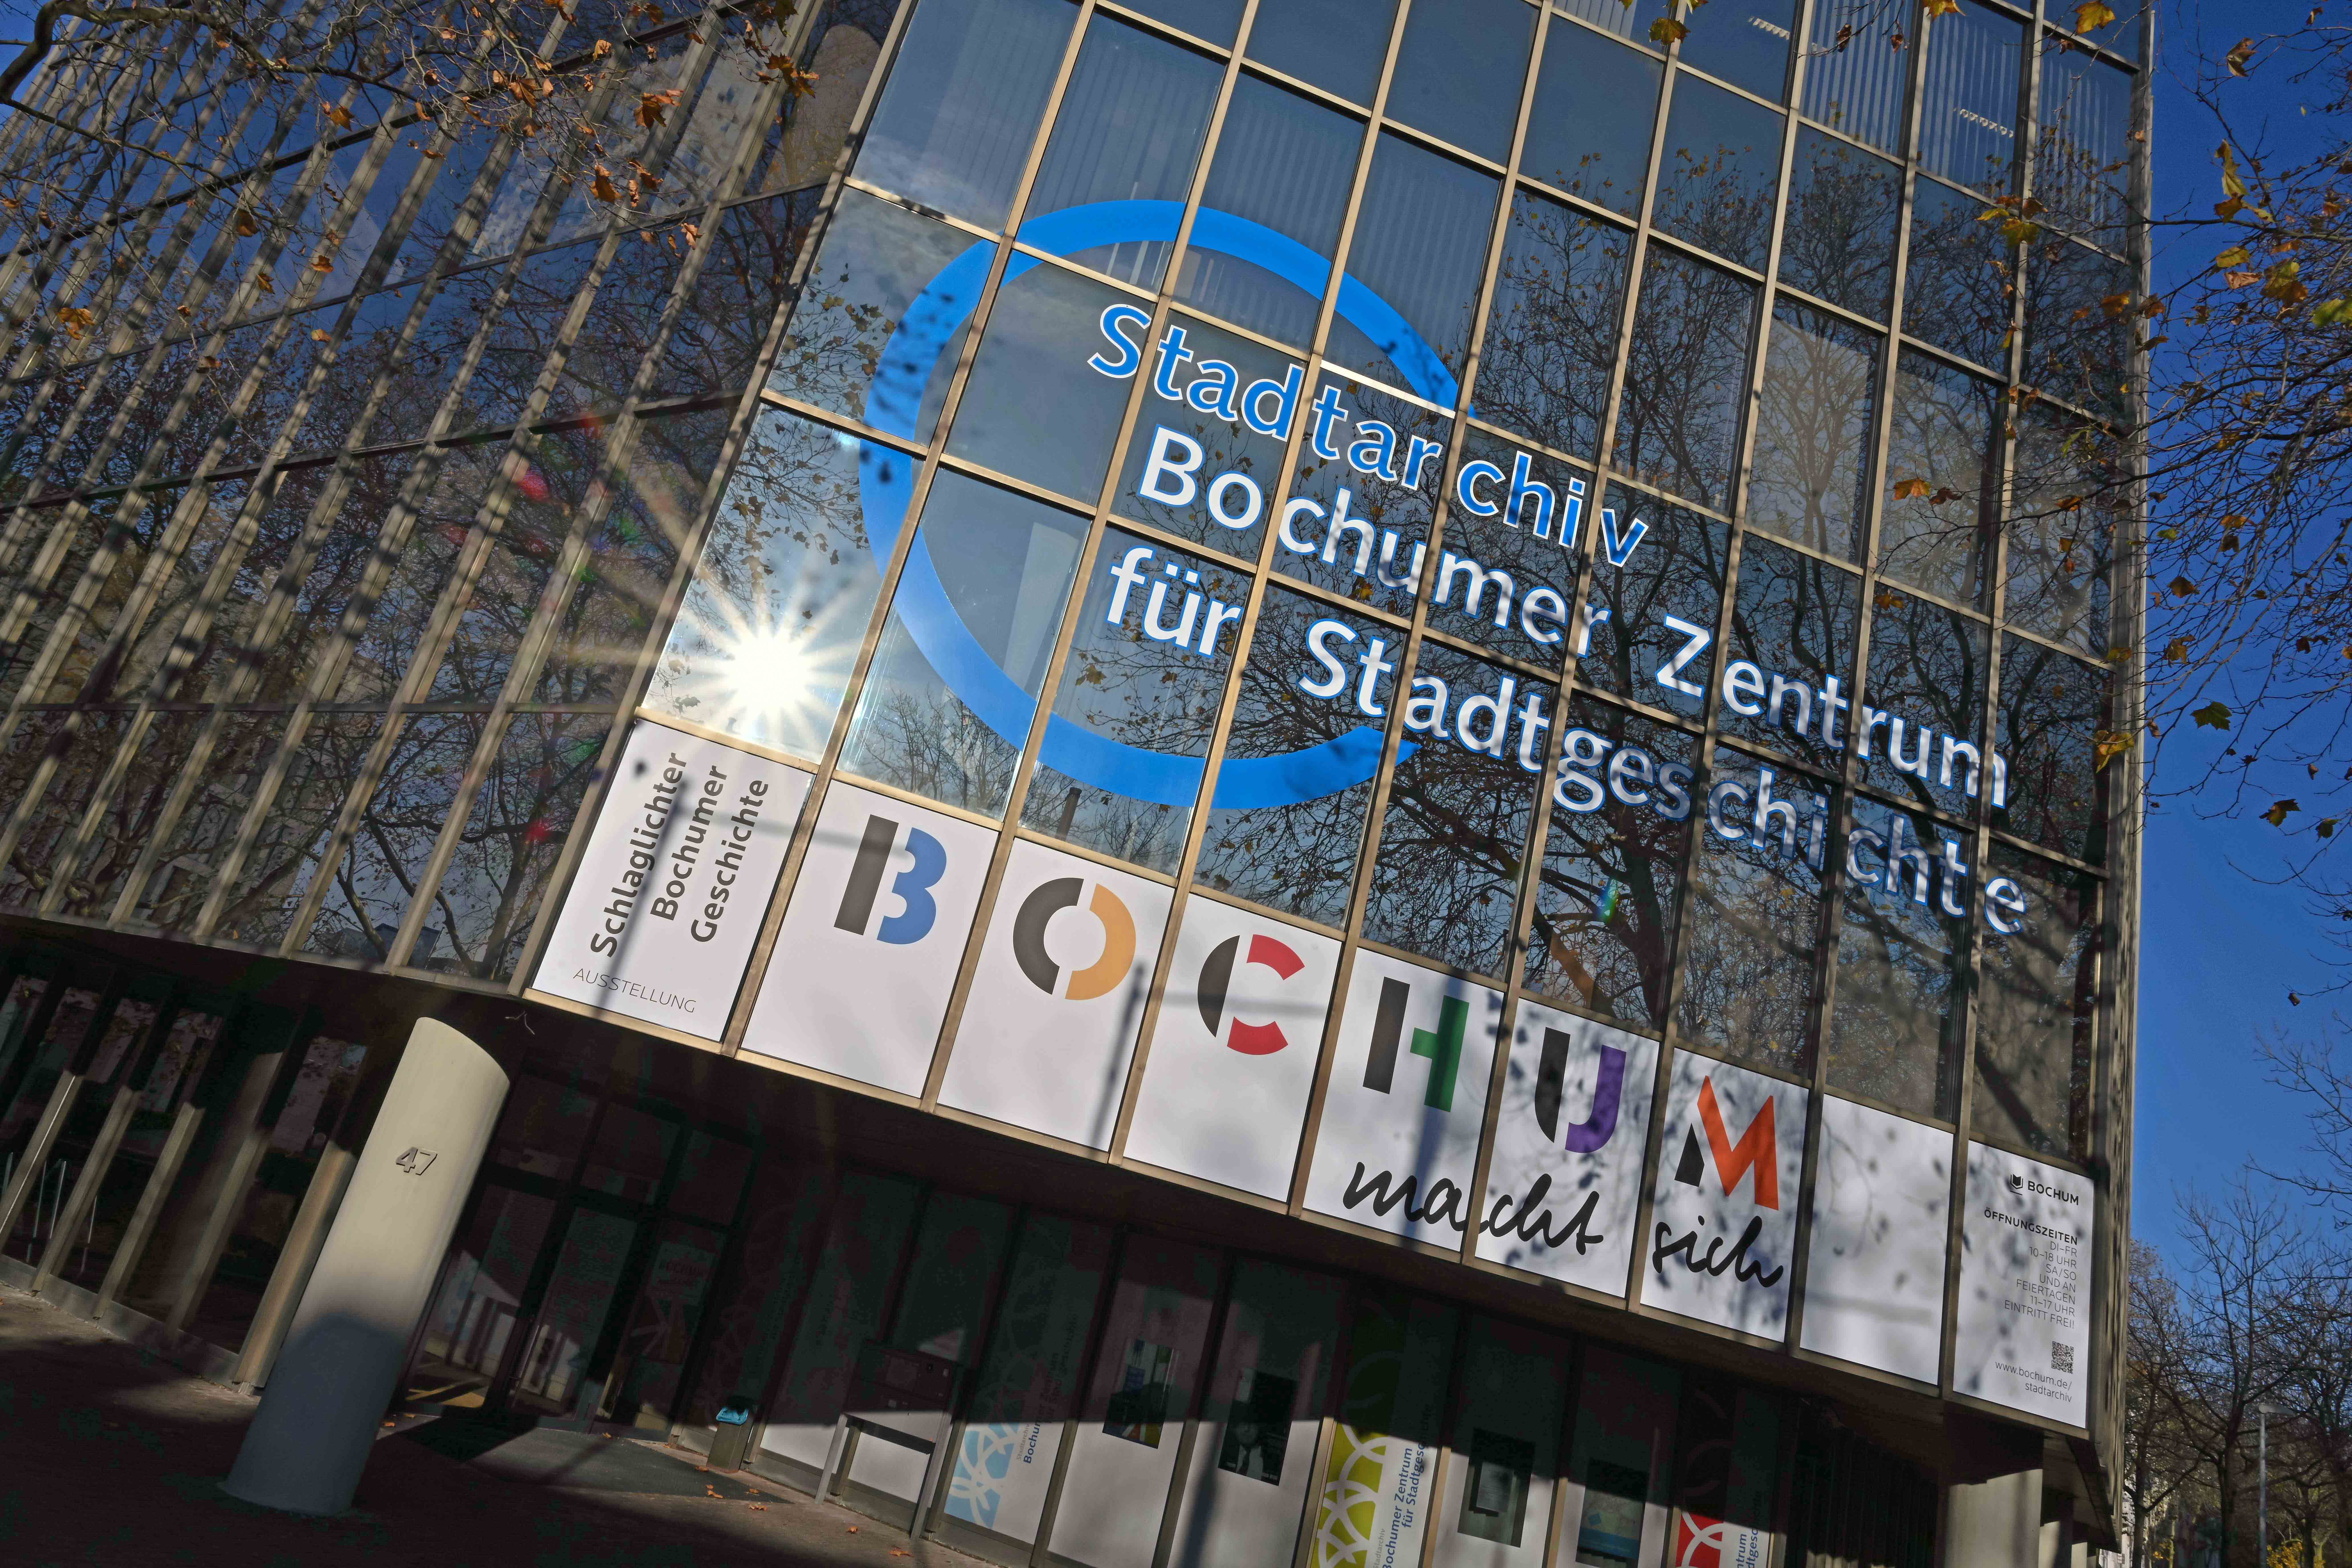 Im Stadtarchiv Bochum finden regelmäßig Vortrahsveranstaltungen statt, zu denen der Eintritt in der Regel frei ist.